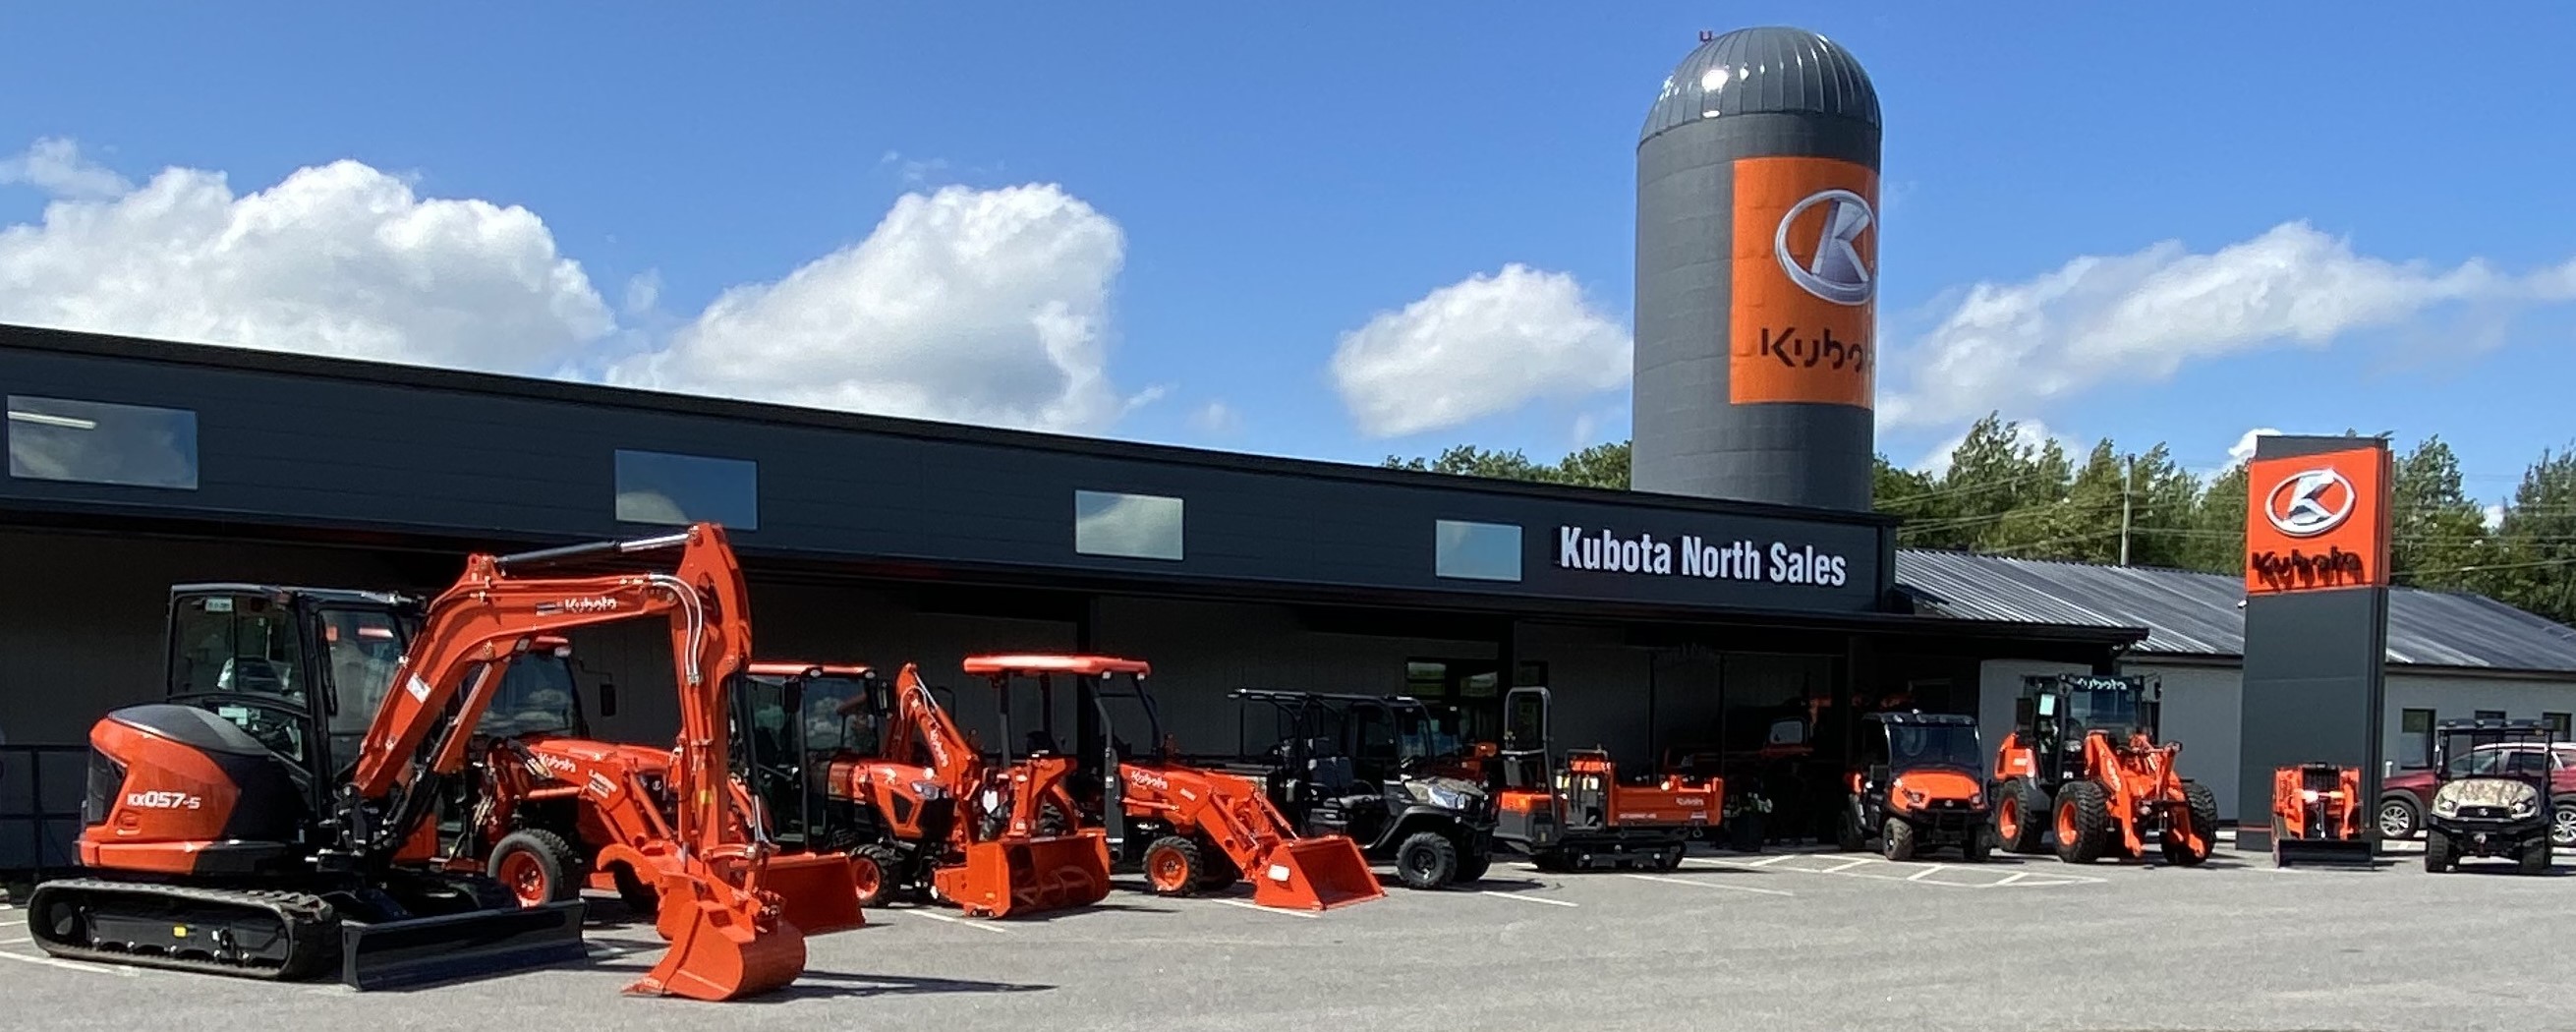 2021 Kubota Tractor Compact for sale in Kubota North, Gravenhurst, Ontario